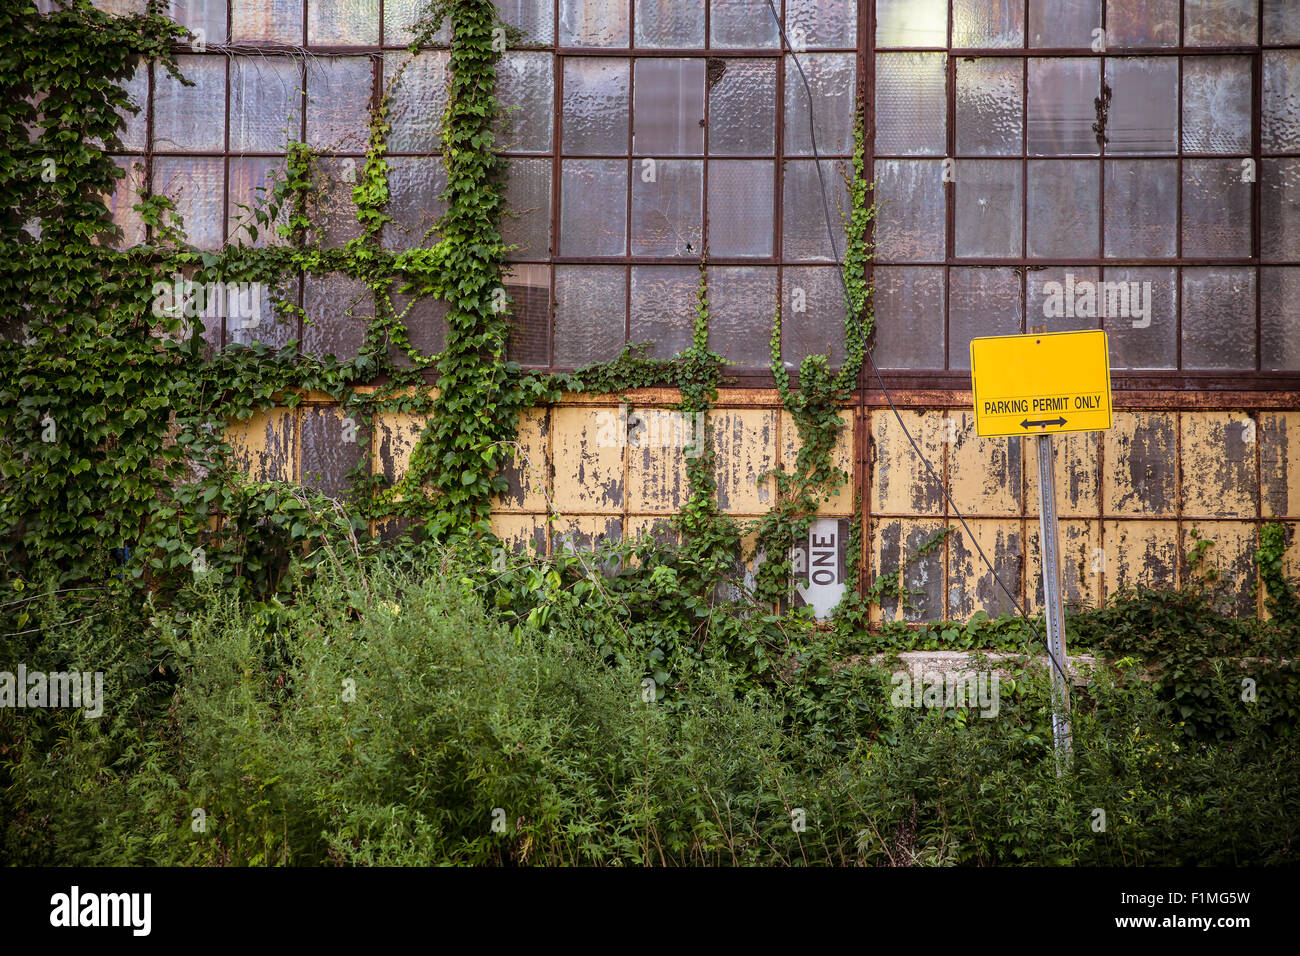 L'extérieur de l'ancien bâtiment industriel abandonné avec windows et envahi par les mauvaises herbes Banque D'Images